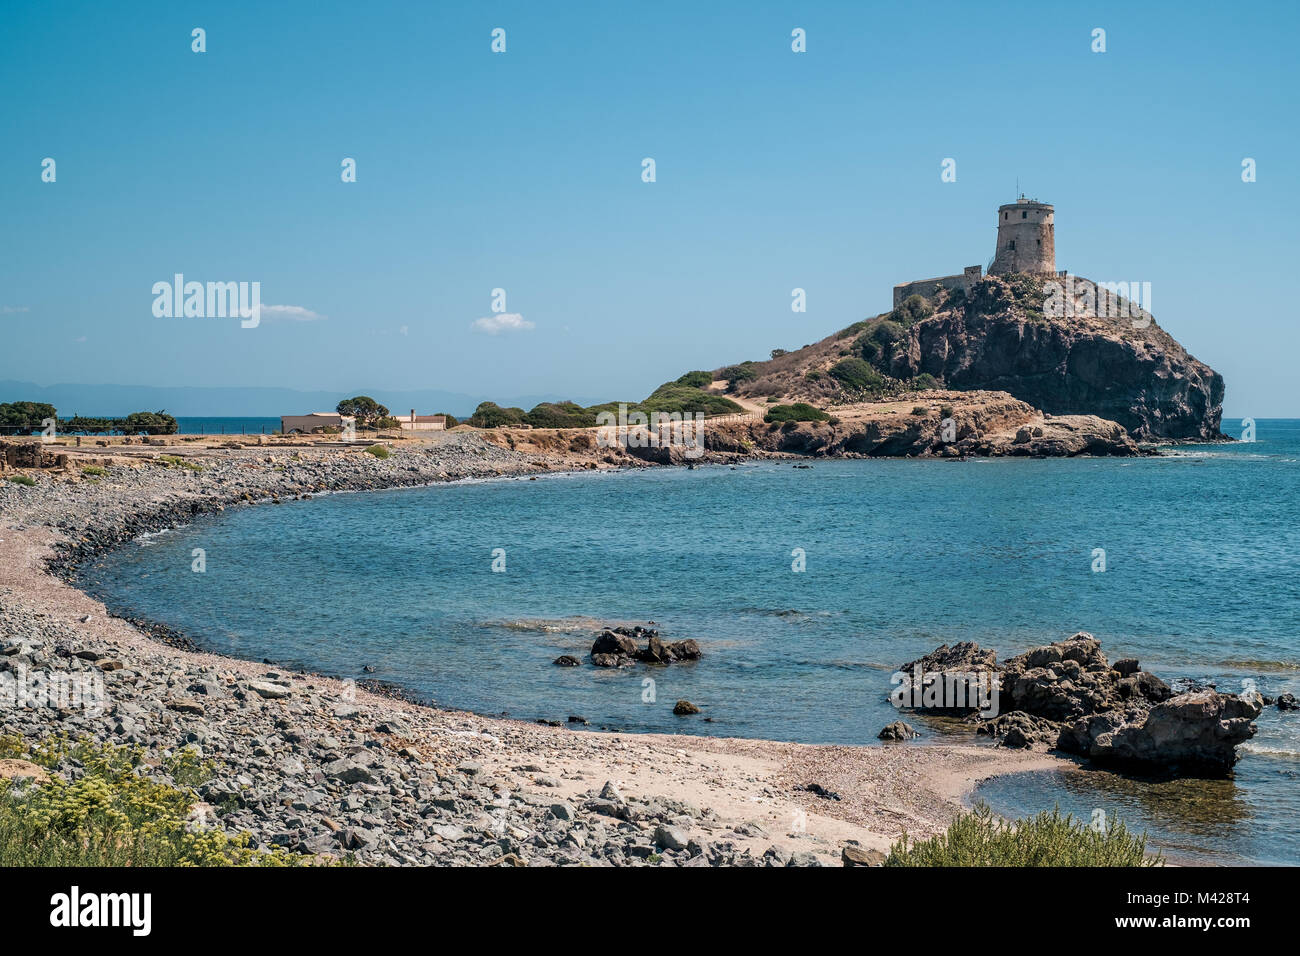 La torre di avvistamento del Nora penisola. Famoso sito archeologico vicino a Cagliari, Sardegna, Italia. Foto Stock